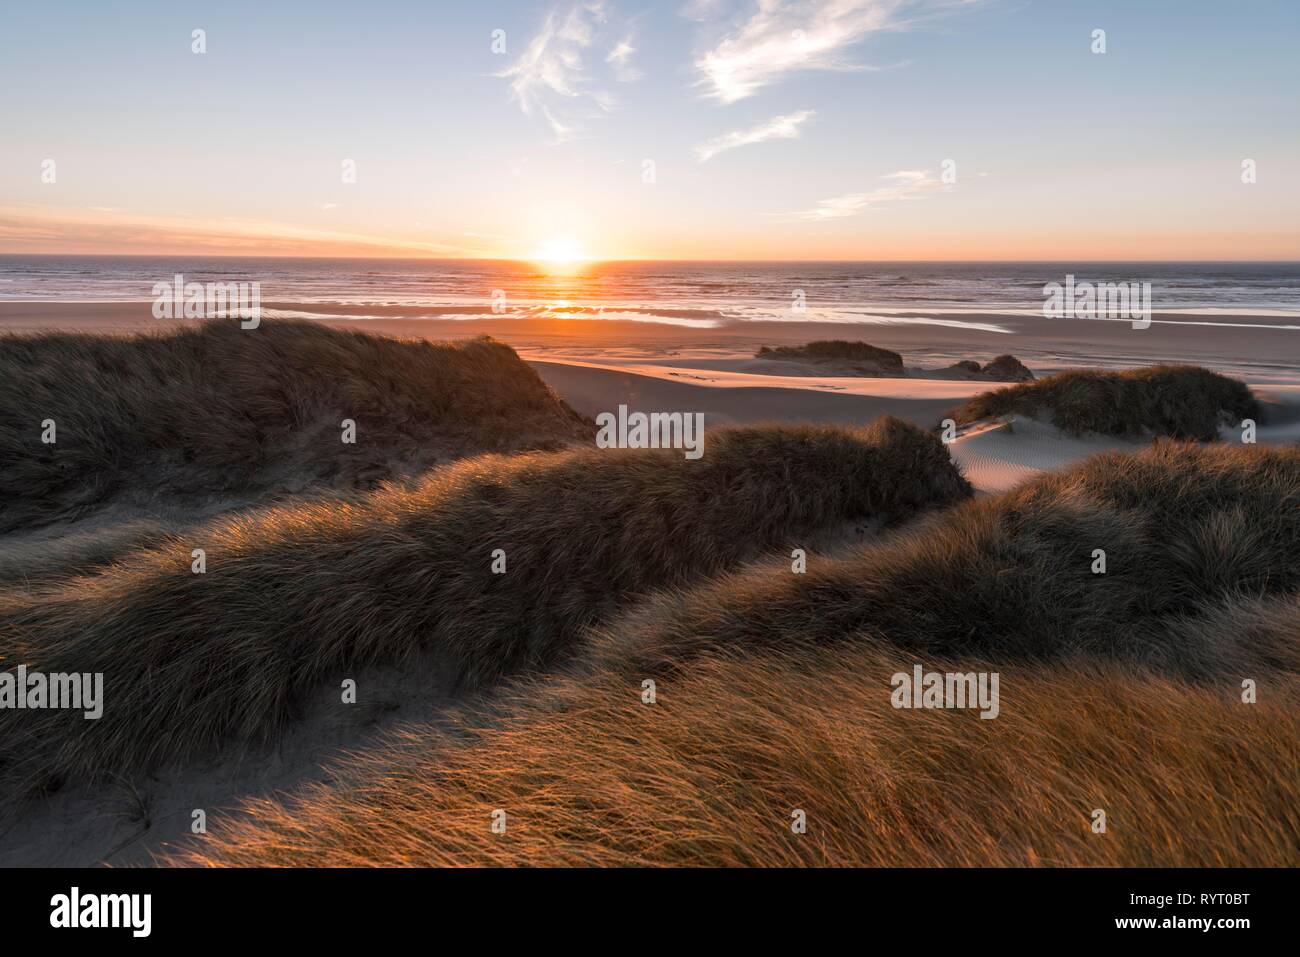 Sonnenuntergang, Sandstrand mit Dünen an der Küste, Erle Düne, Baker Beach, Aussichtspunkt Holman Vista, California, USA Stockfoto